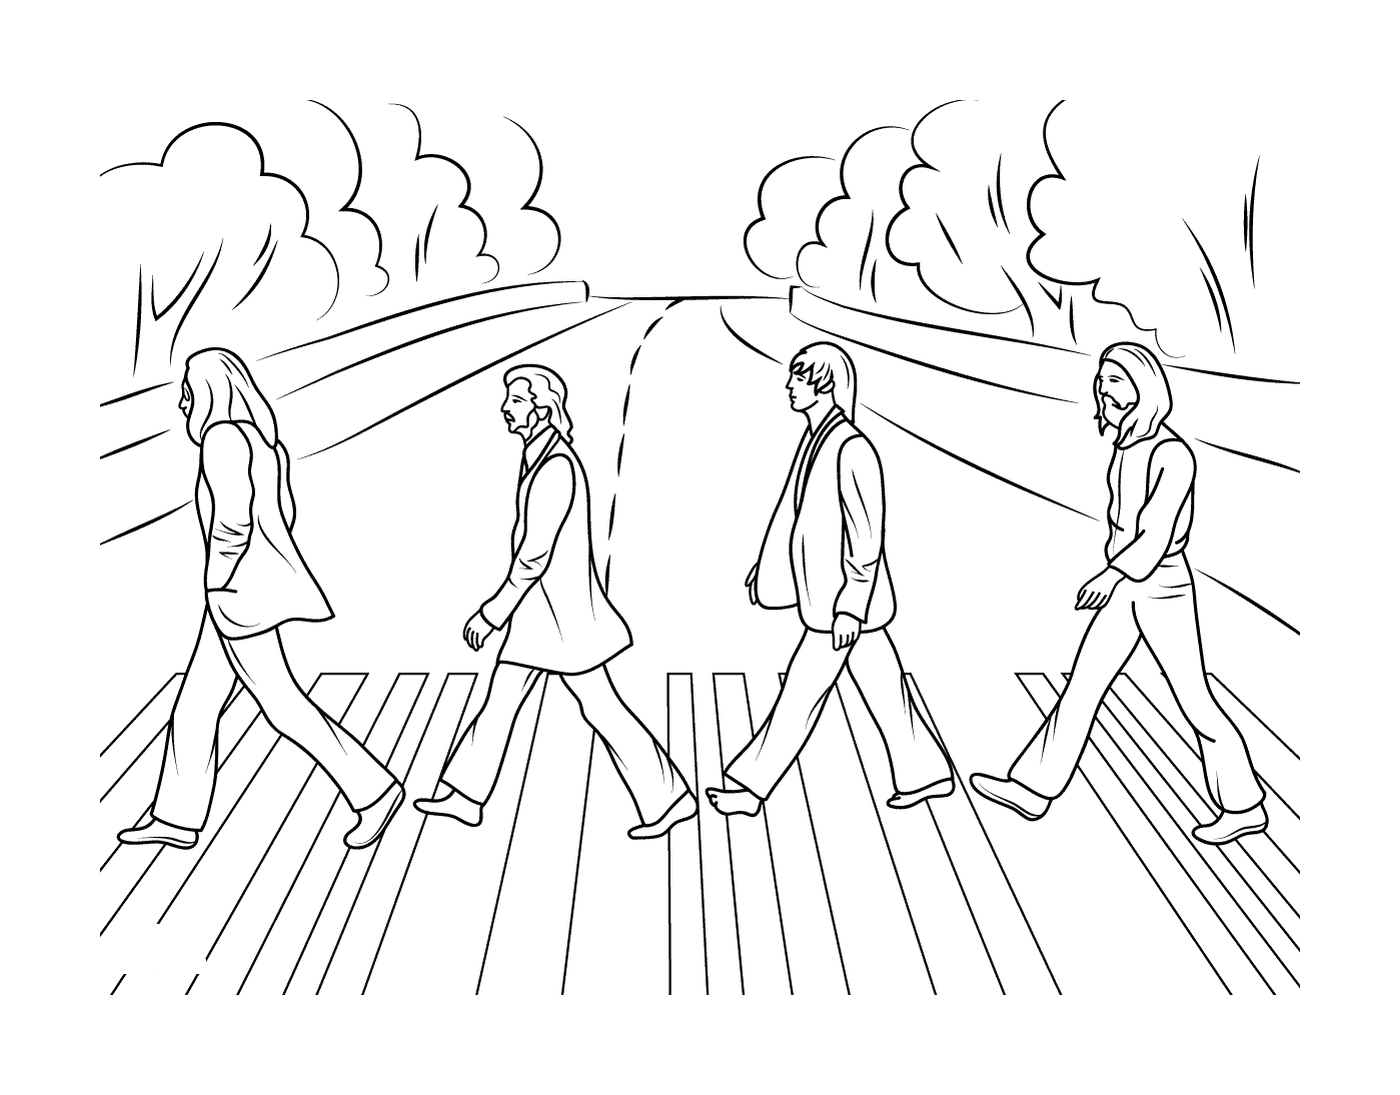  Un gruppo di persone che attraversano una strada 